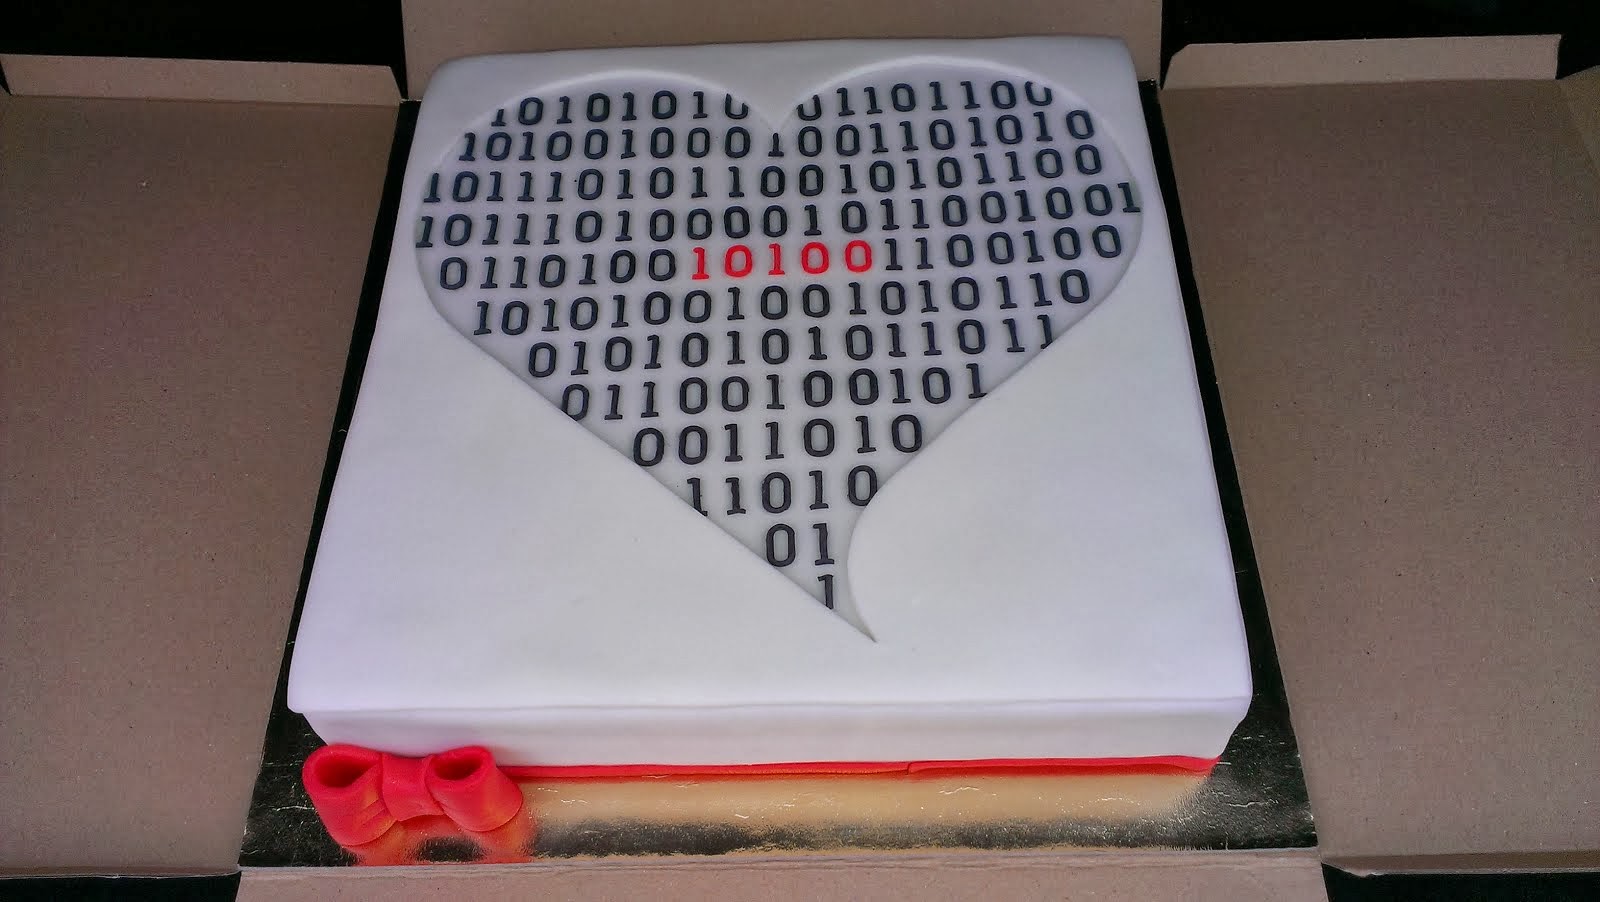 Torta s binárnym kódom